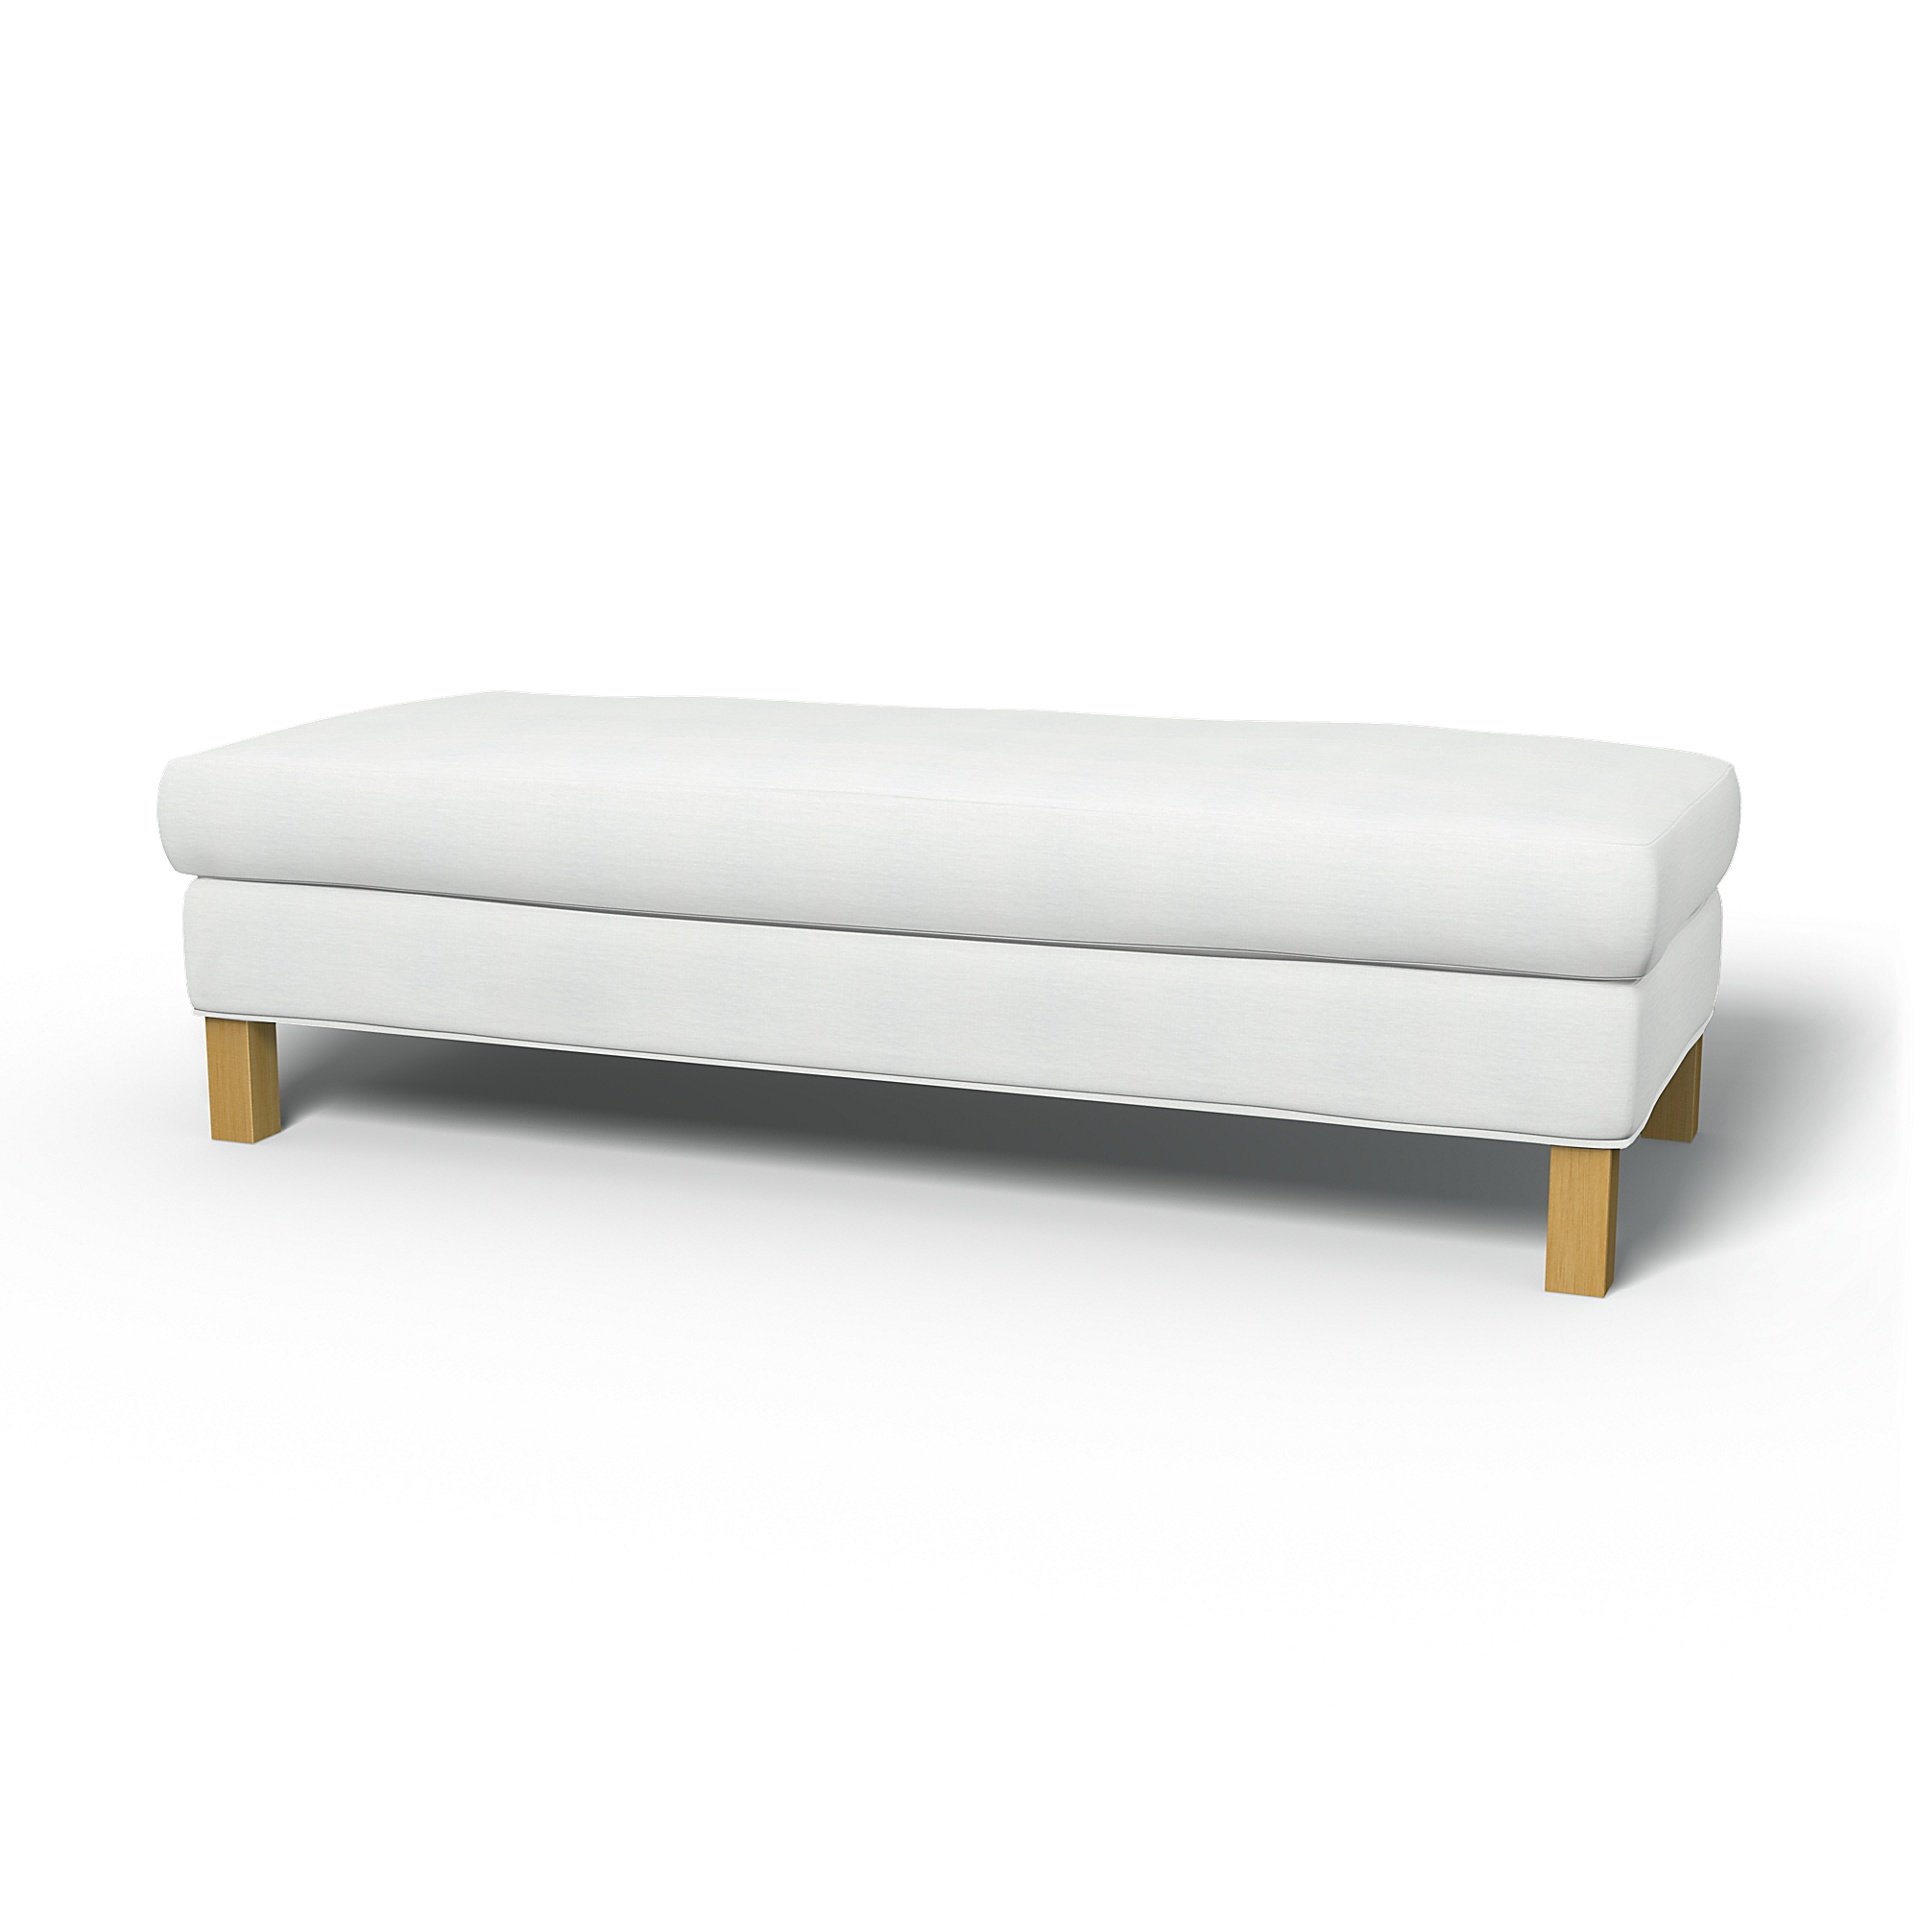 IKEA - Karlanda Bench Cover, White, Linen - Bemz